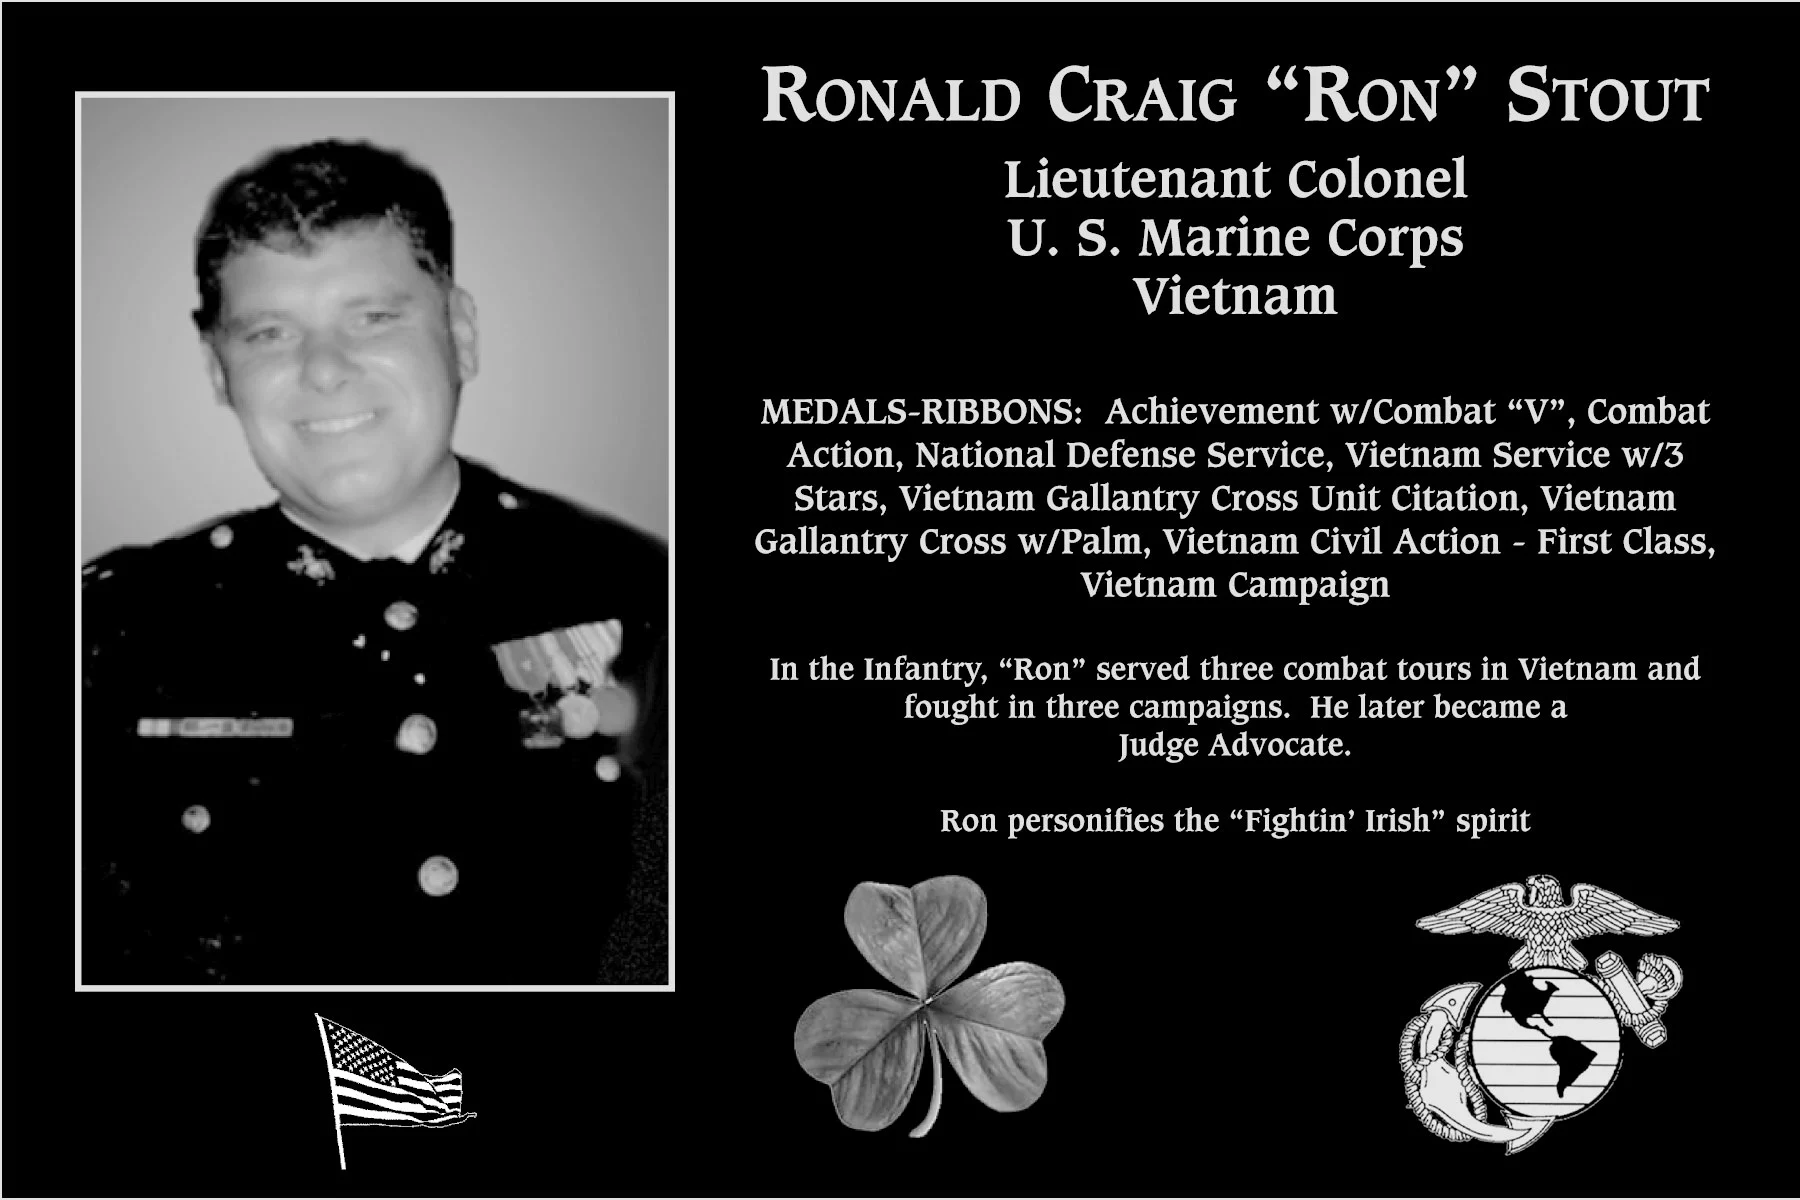 Ronald Craig “Ron” Stout